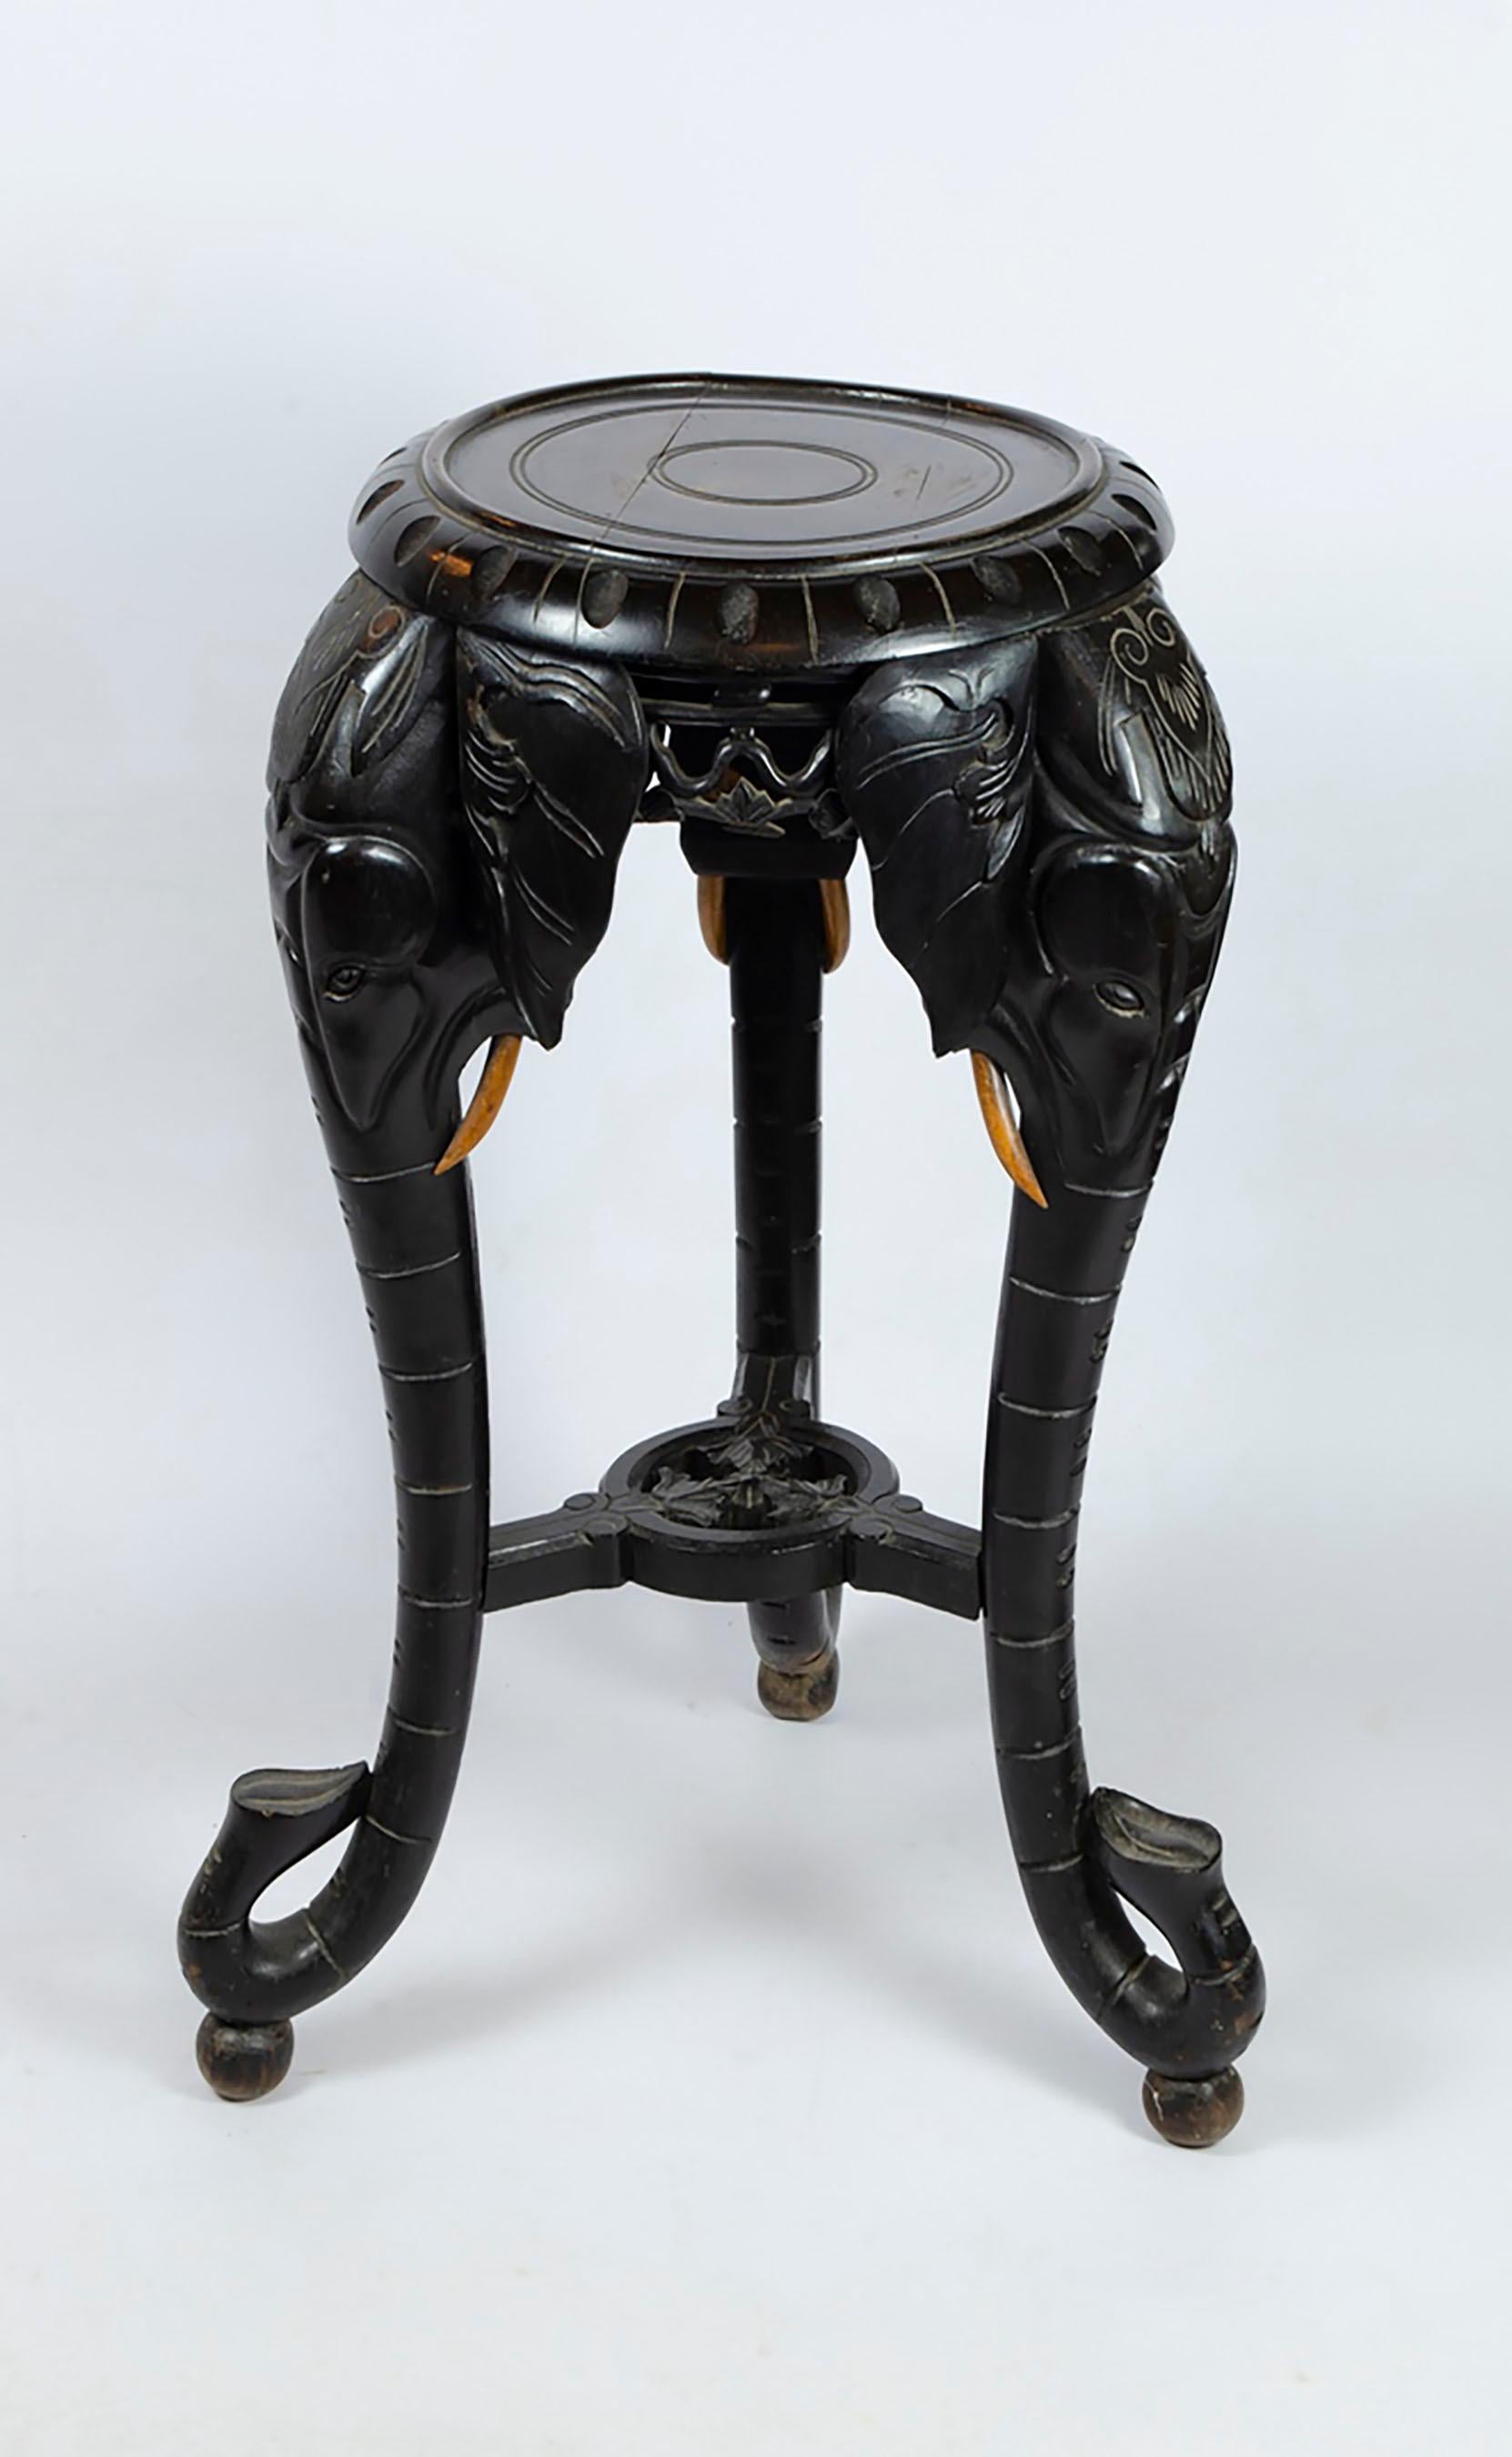 Ein Beistelltisch aus Hartholz aus dem frühen 20. Jahrhundert, handgeschnitzt mit schönen Elefantenköpfen/-stämmen, die die Beine des Tisches bilden. Ursprünglich in Südostasien geschnitzt, hat es eine schön gealterte ebonisierte Färbung mit der